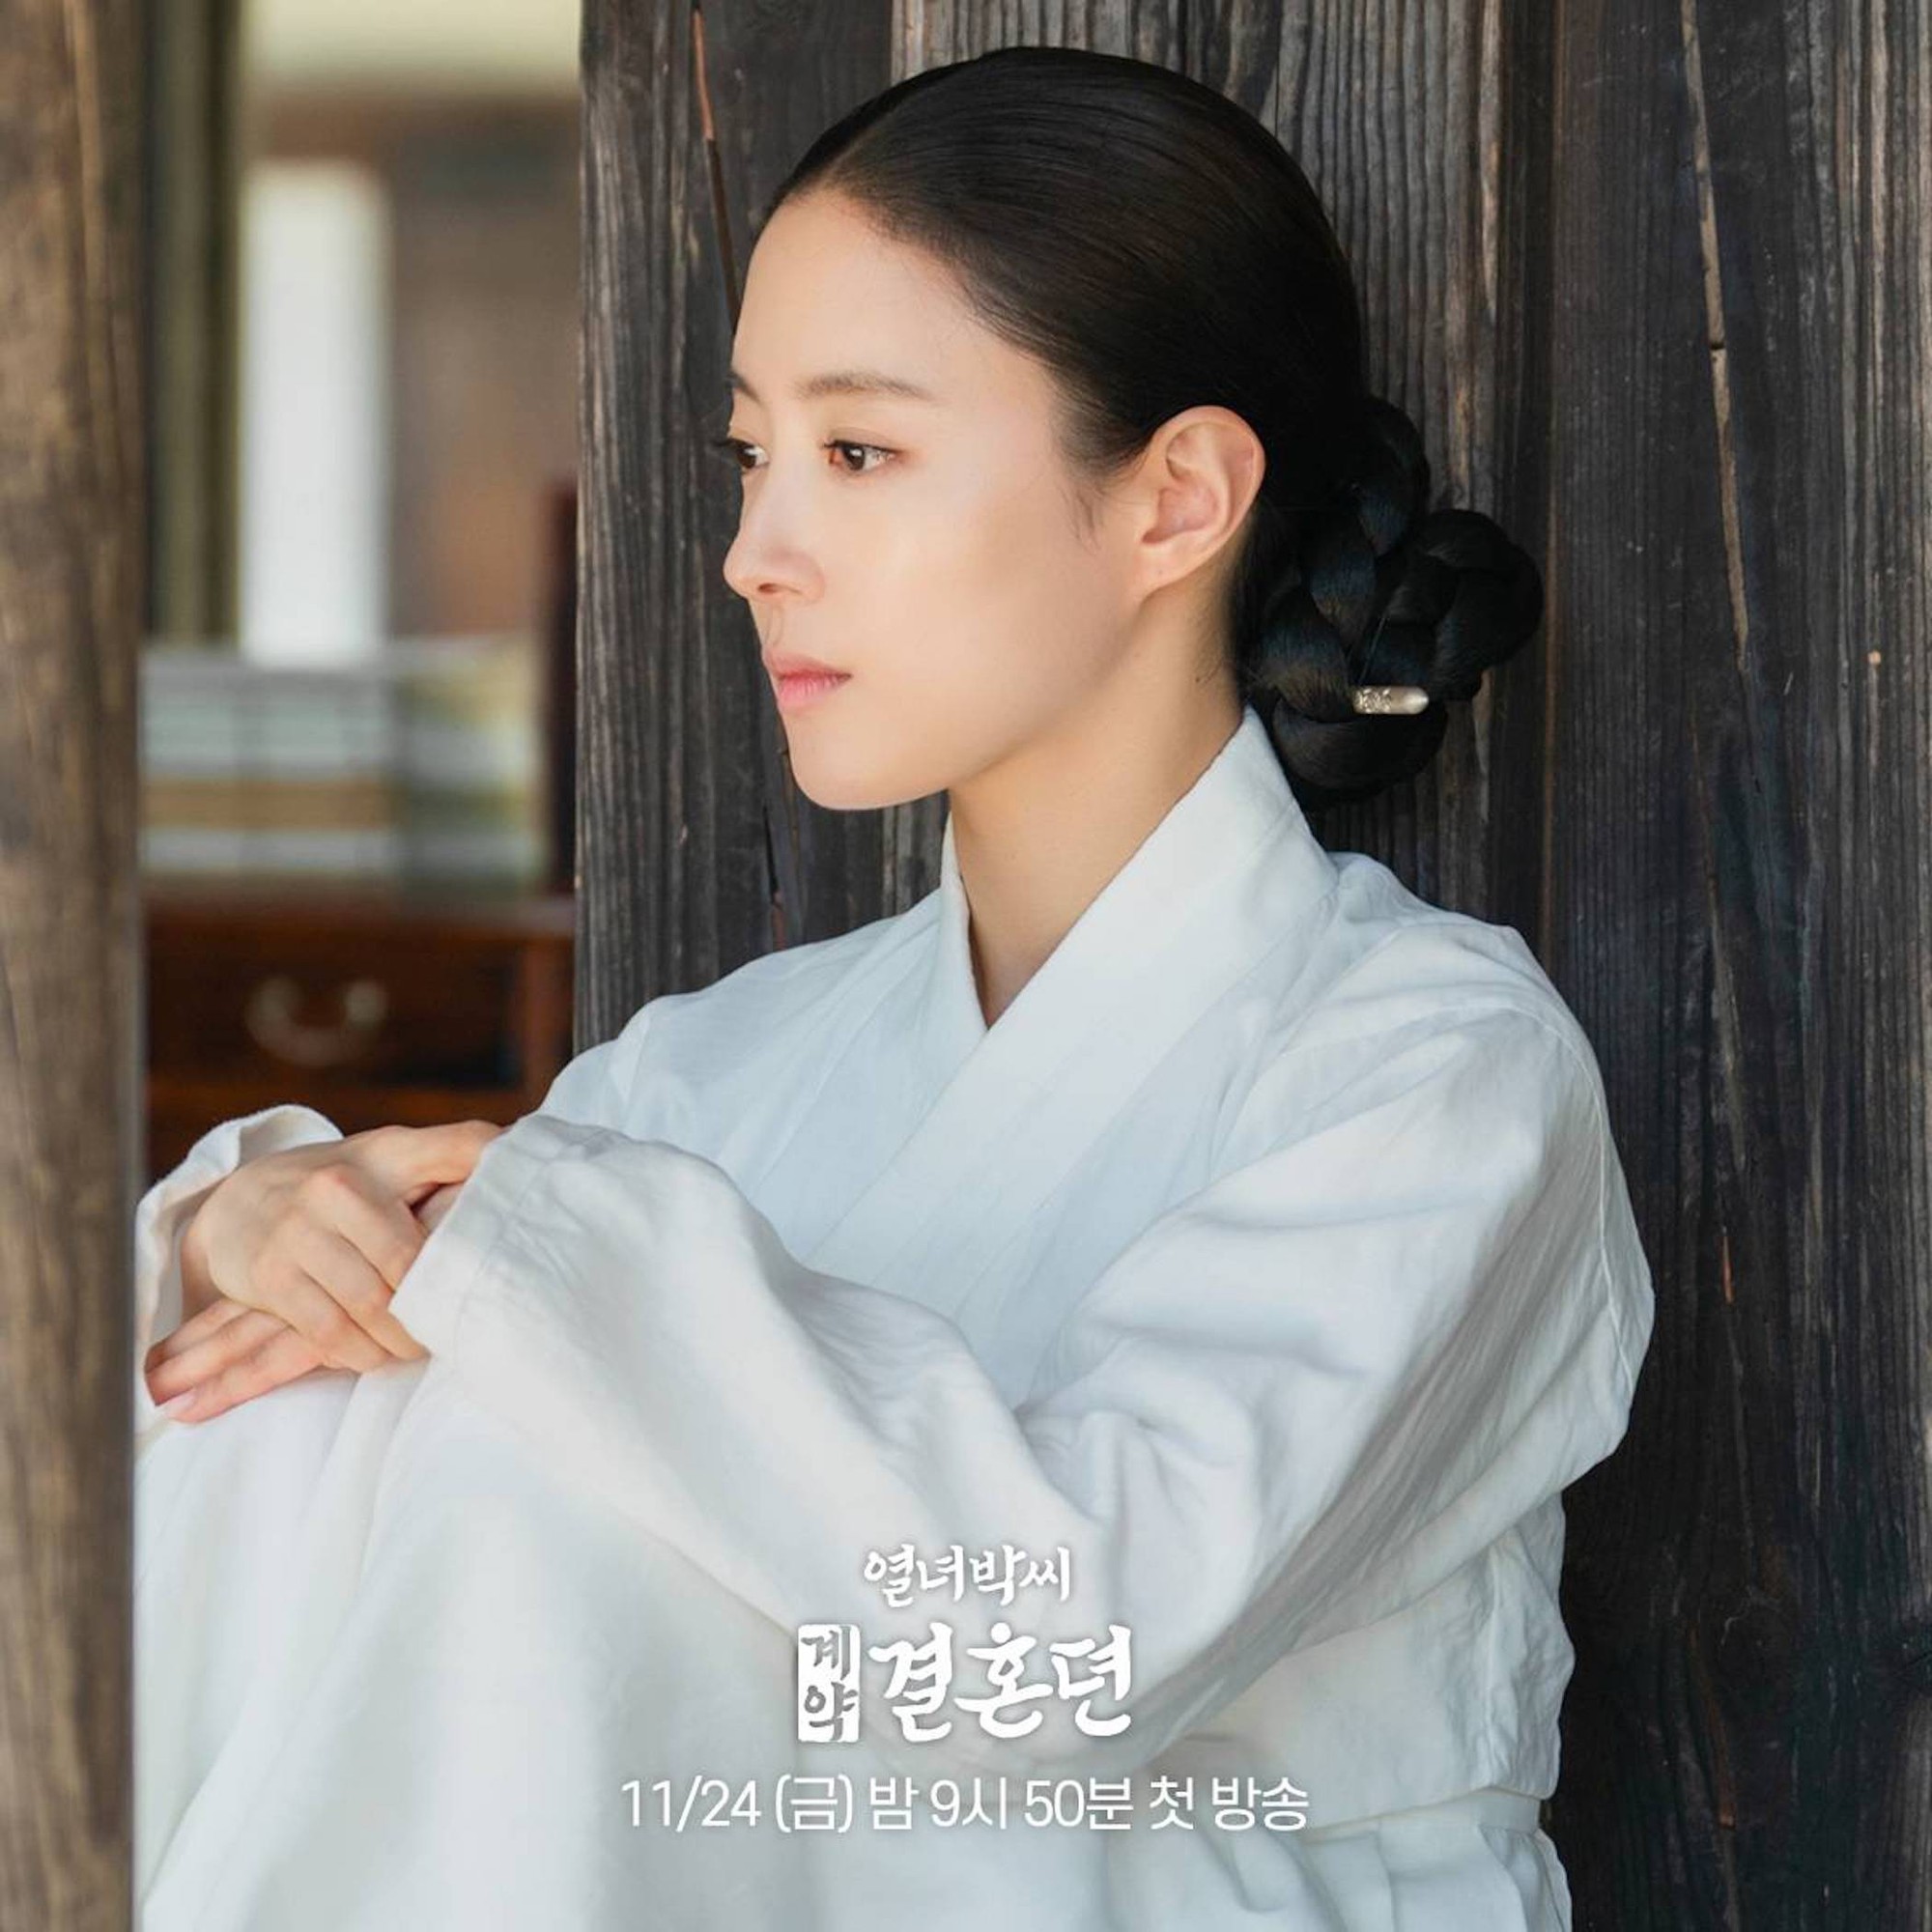 'Mỹ nhân cổ trang Hàn Quốc' Lee Se Young duyên dáng trong phim mới - Ảnh 3.